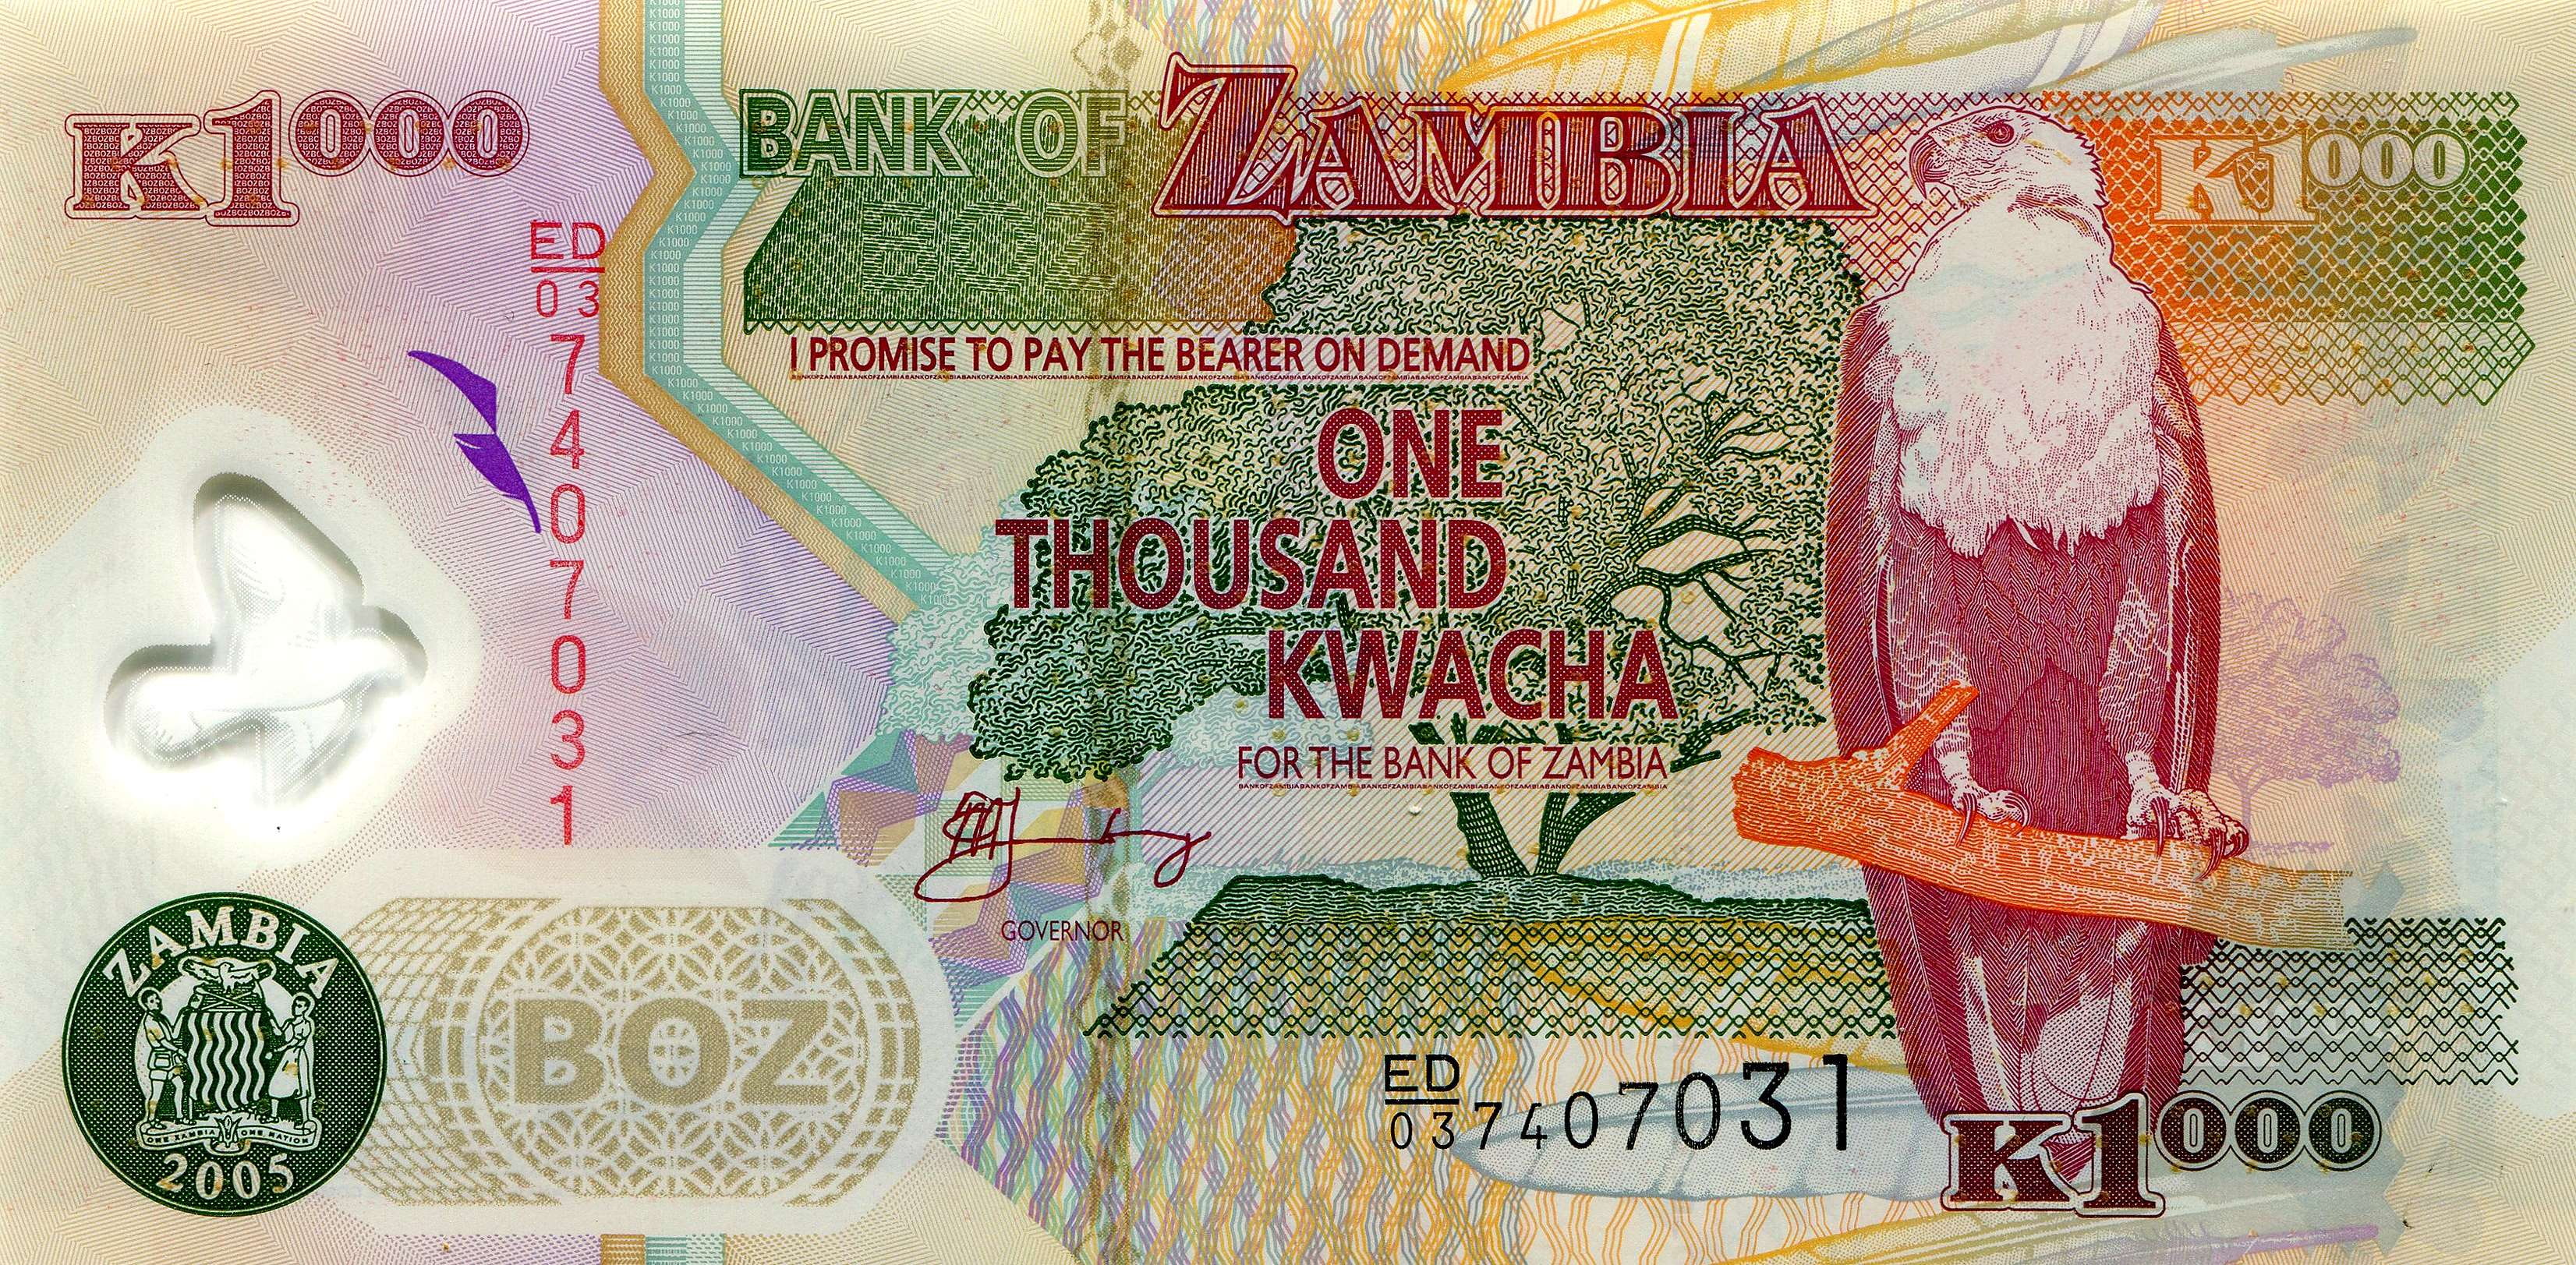 Zambian 1000 Kwacha Note - HD Wallpaper 